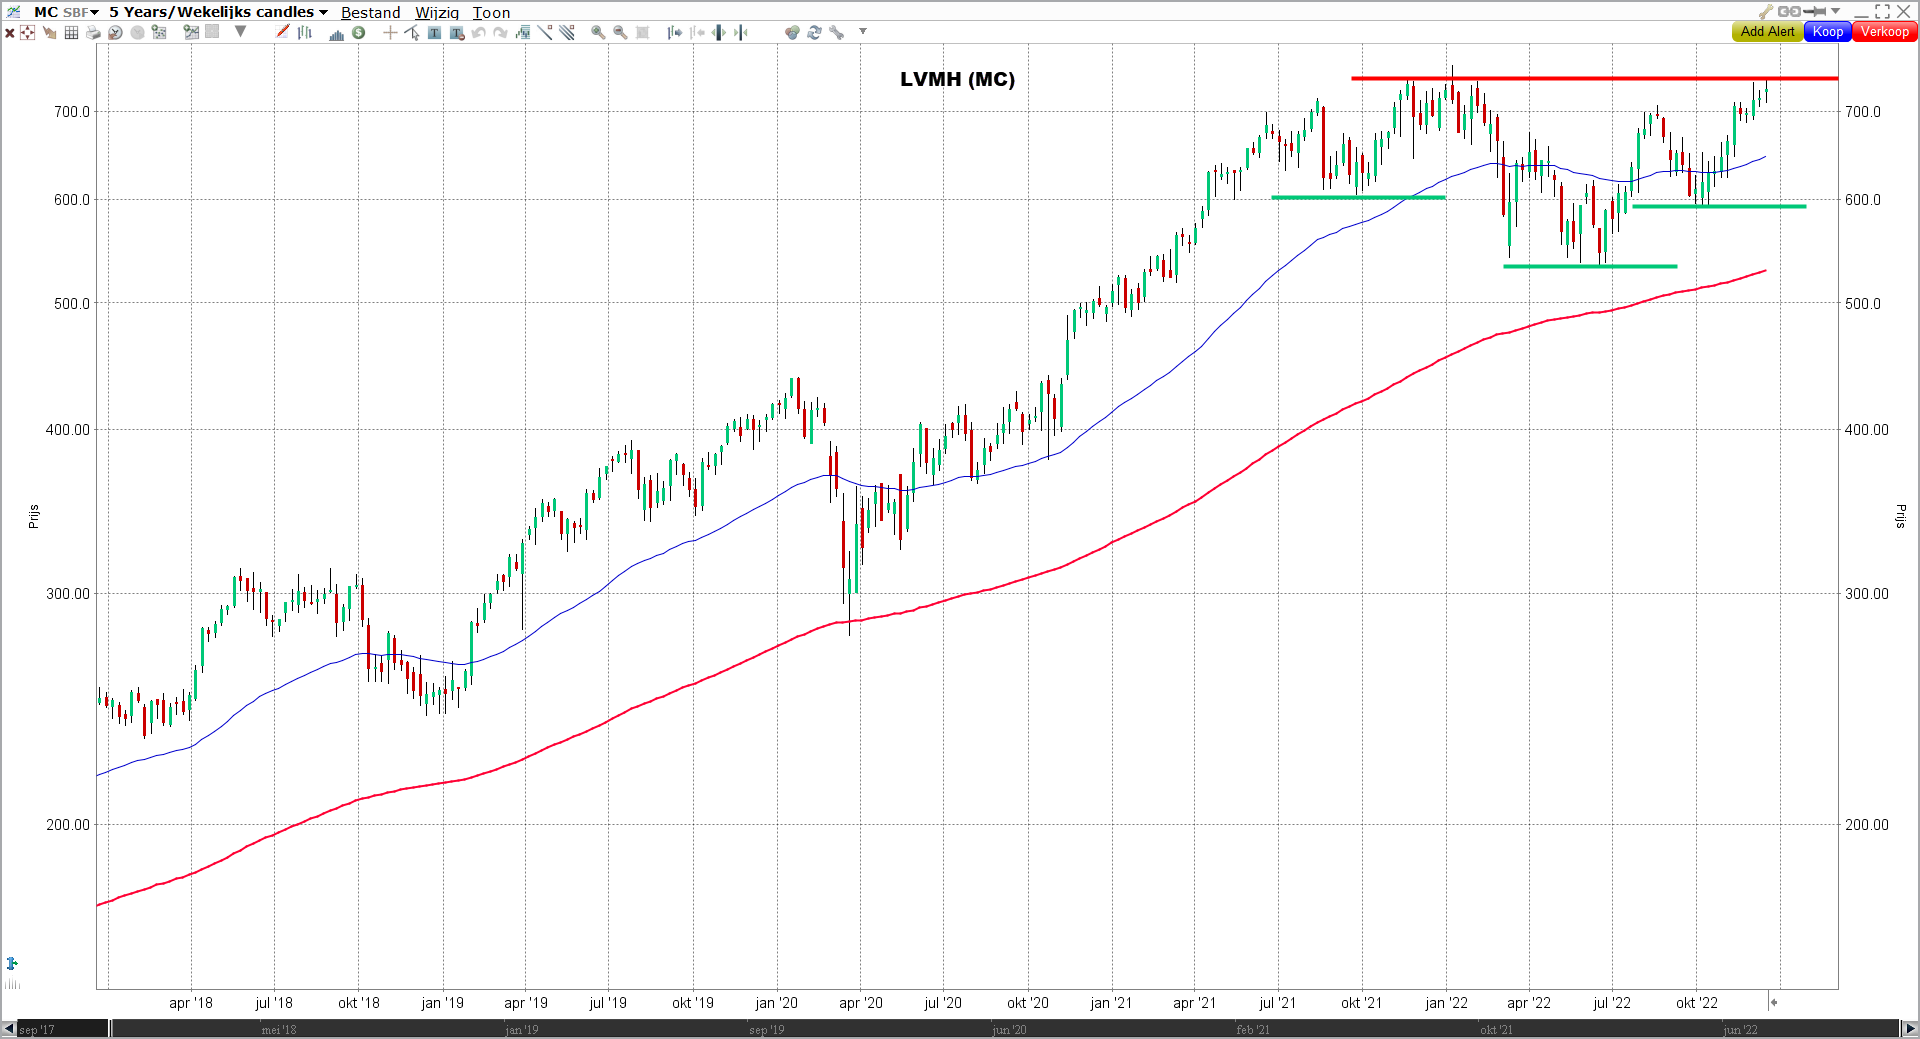 LVMH koers | LVMH stock | LVHM dividend